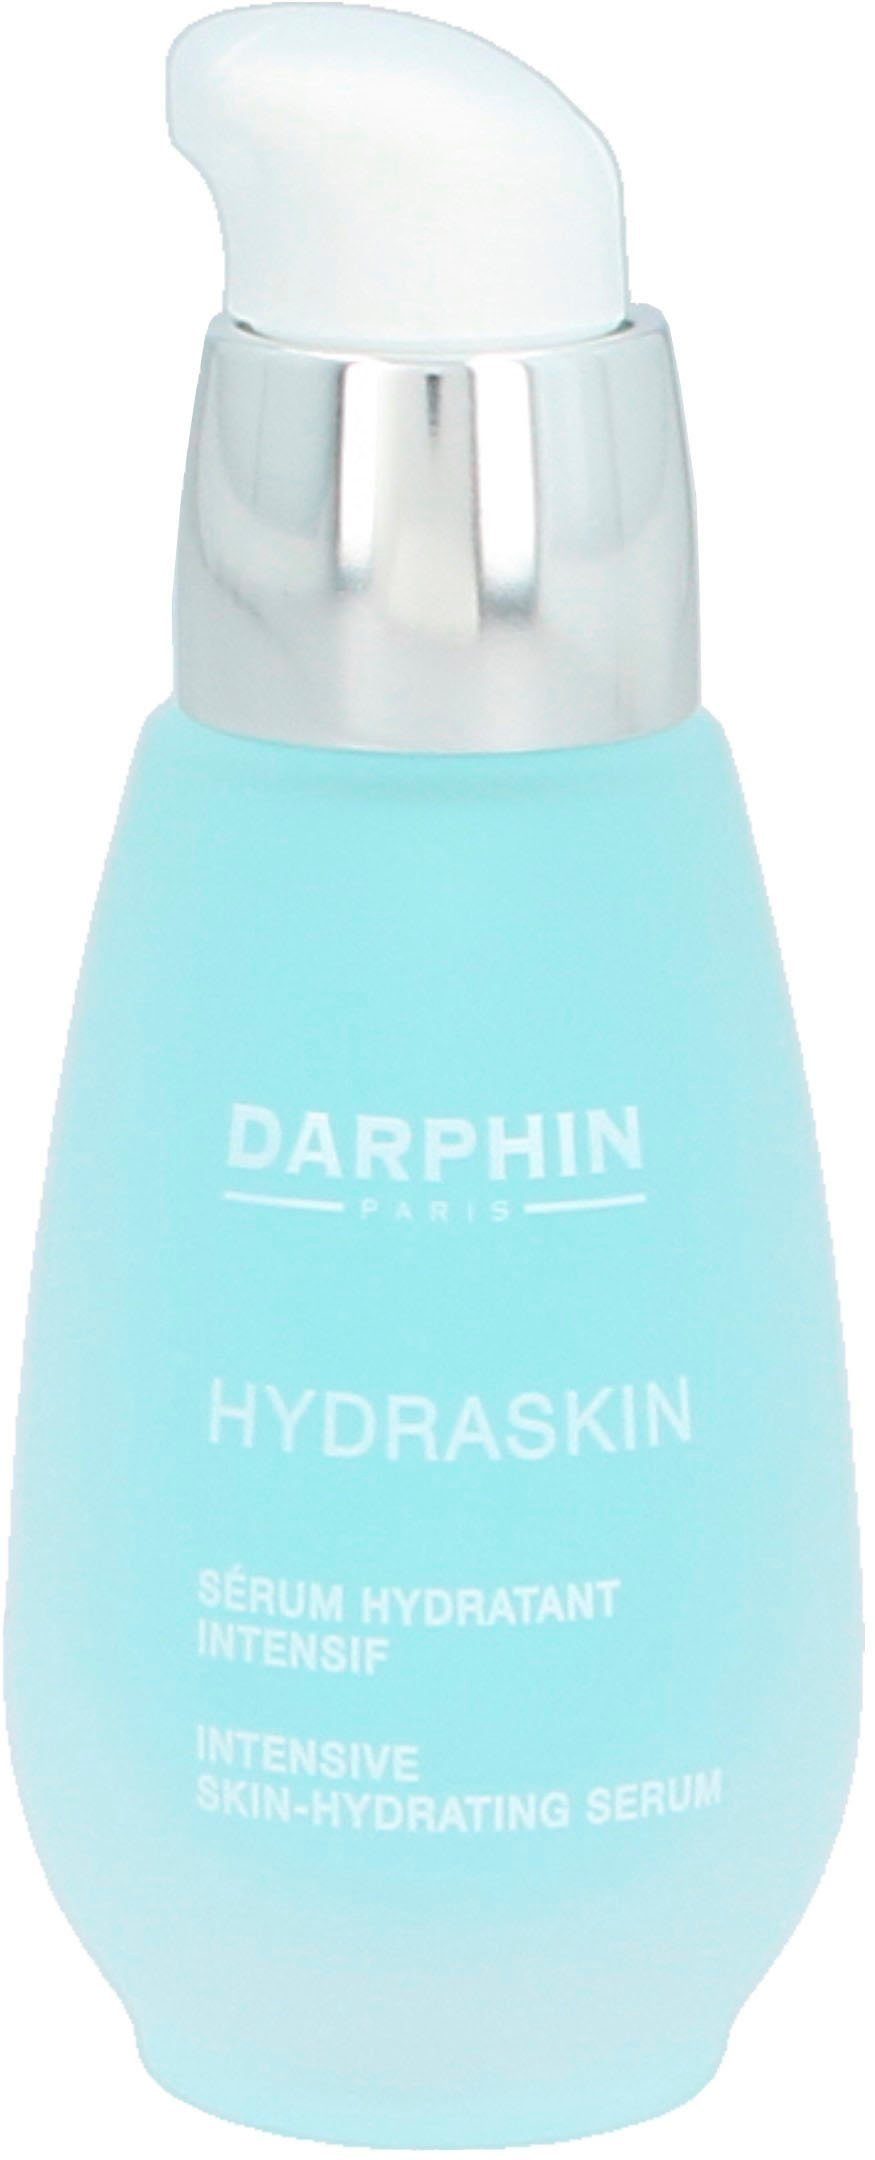 Damen Gesichtspflege Darphin Gesichtsserum Hydraskin Intensive Skin-Hydrating